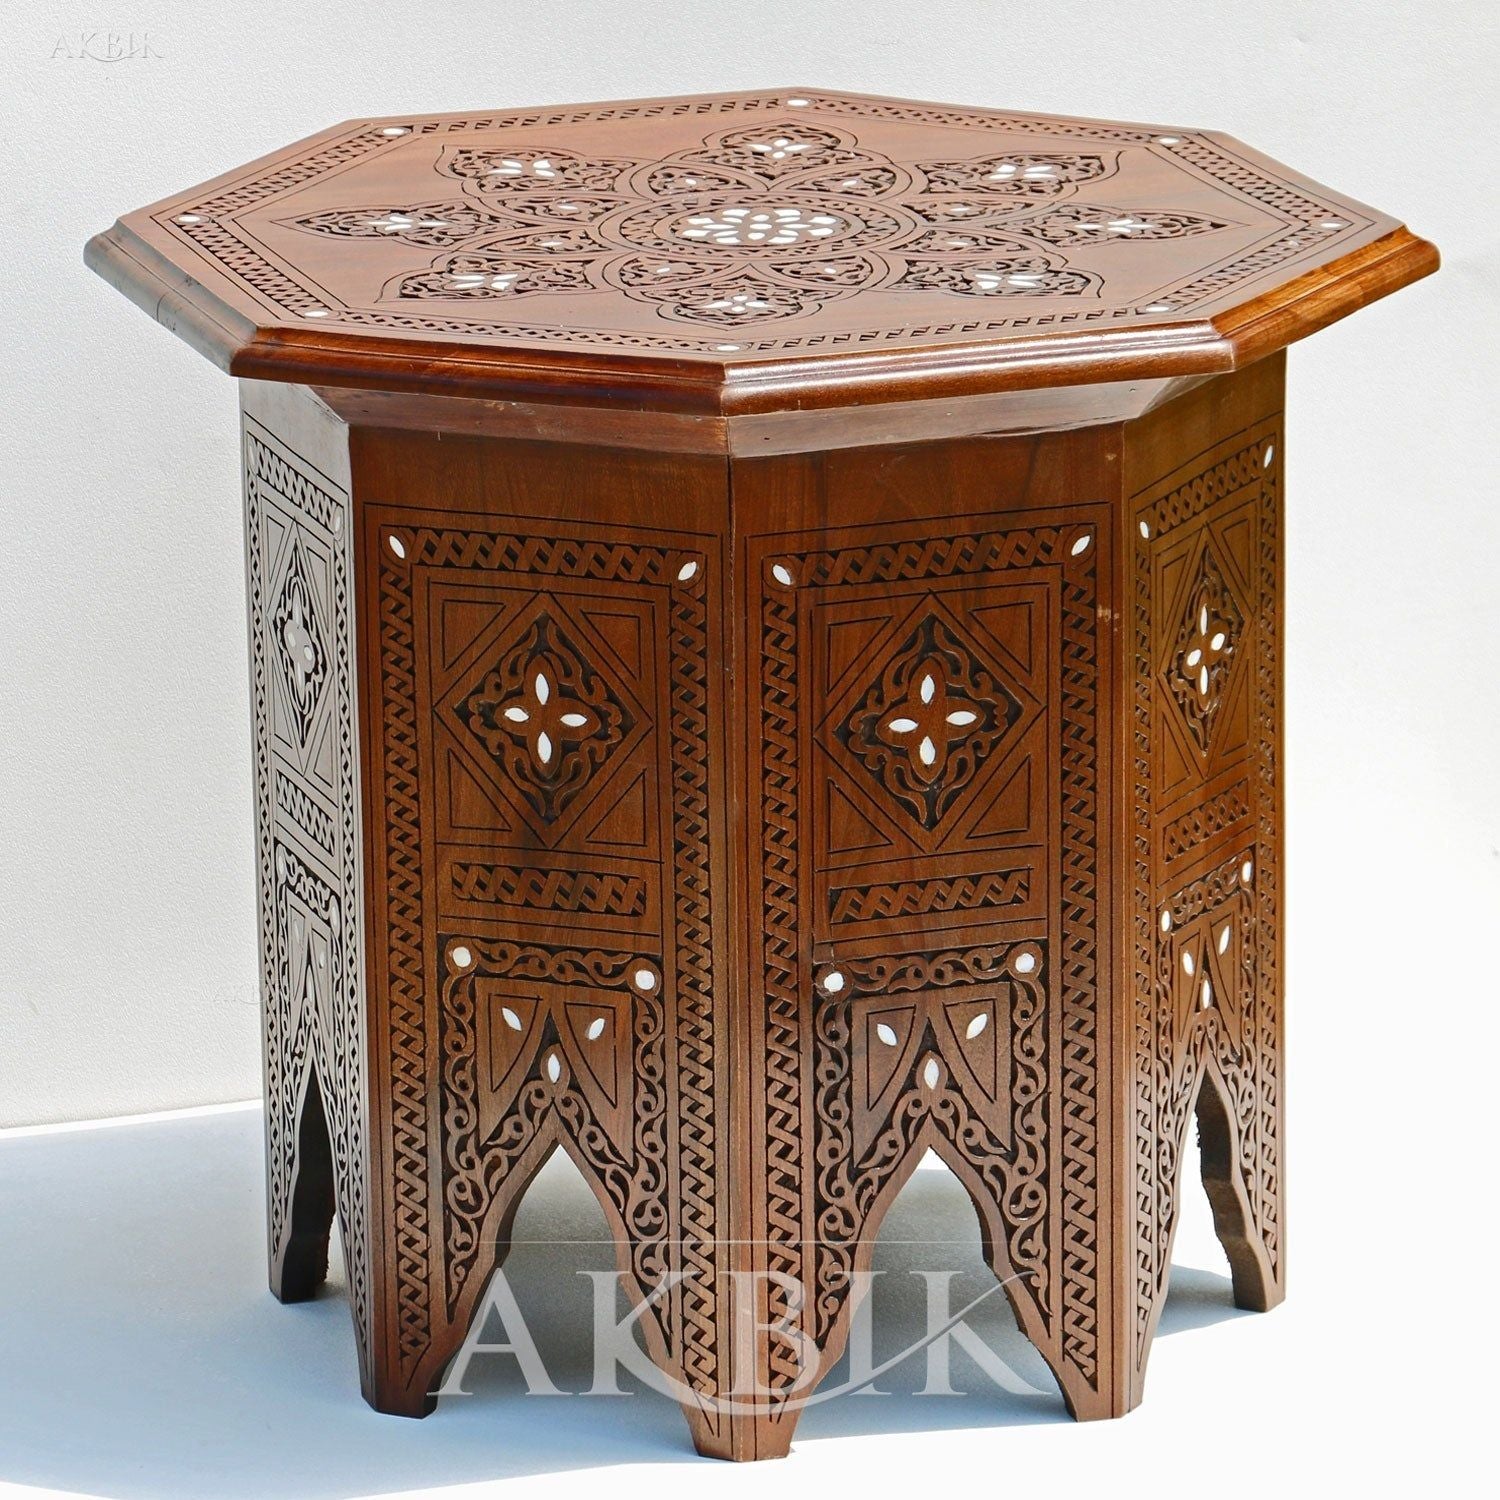 SEVILLE SIDE TABLE - AKBIK Furniture & Design